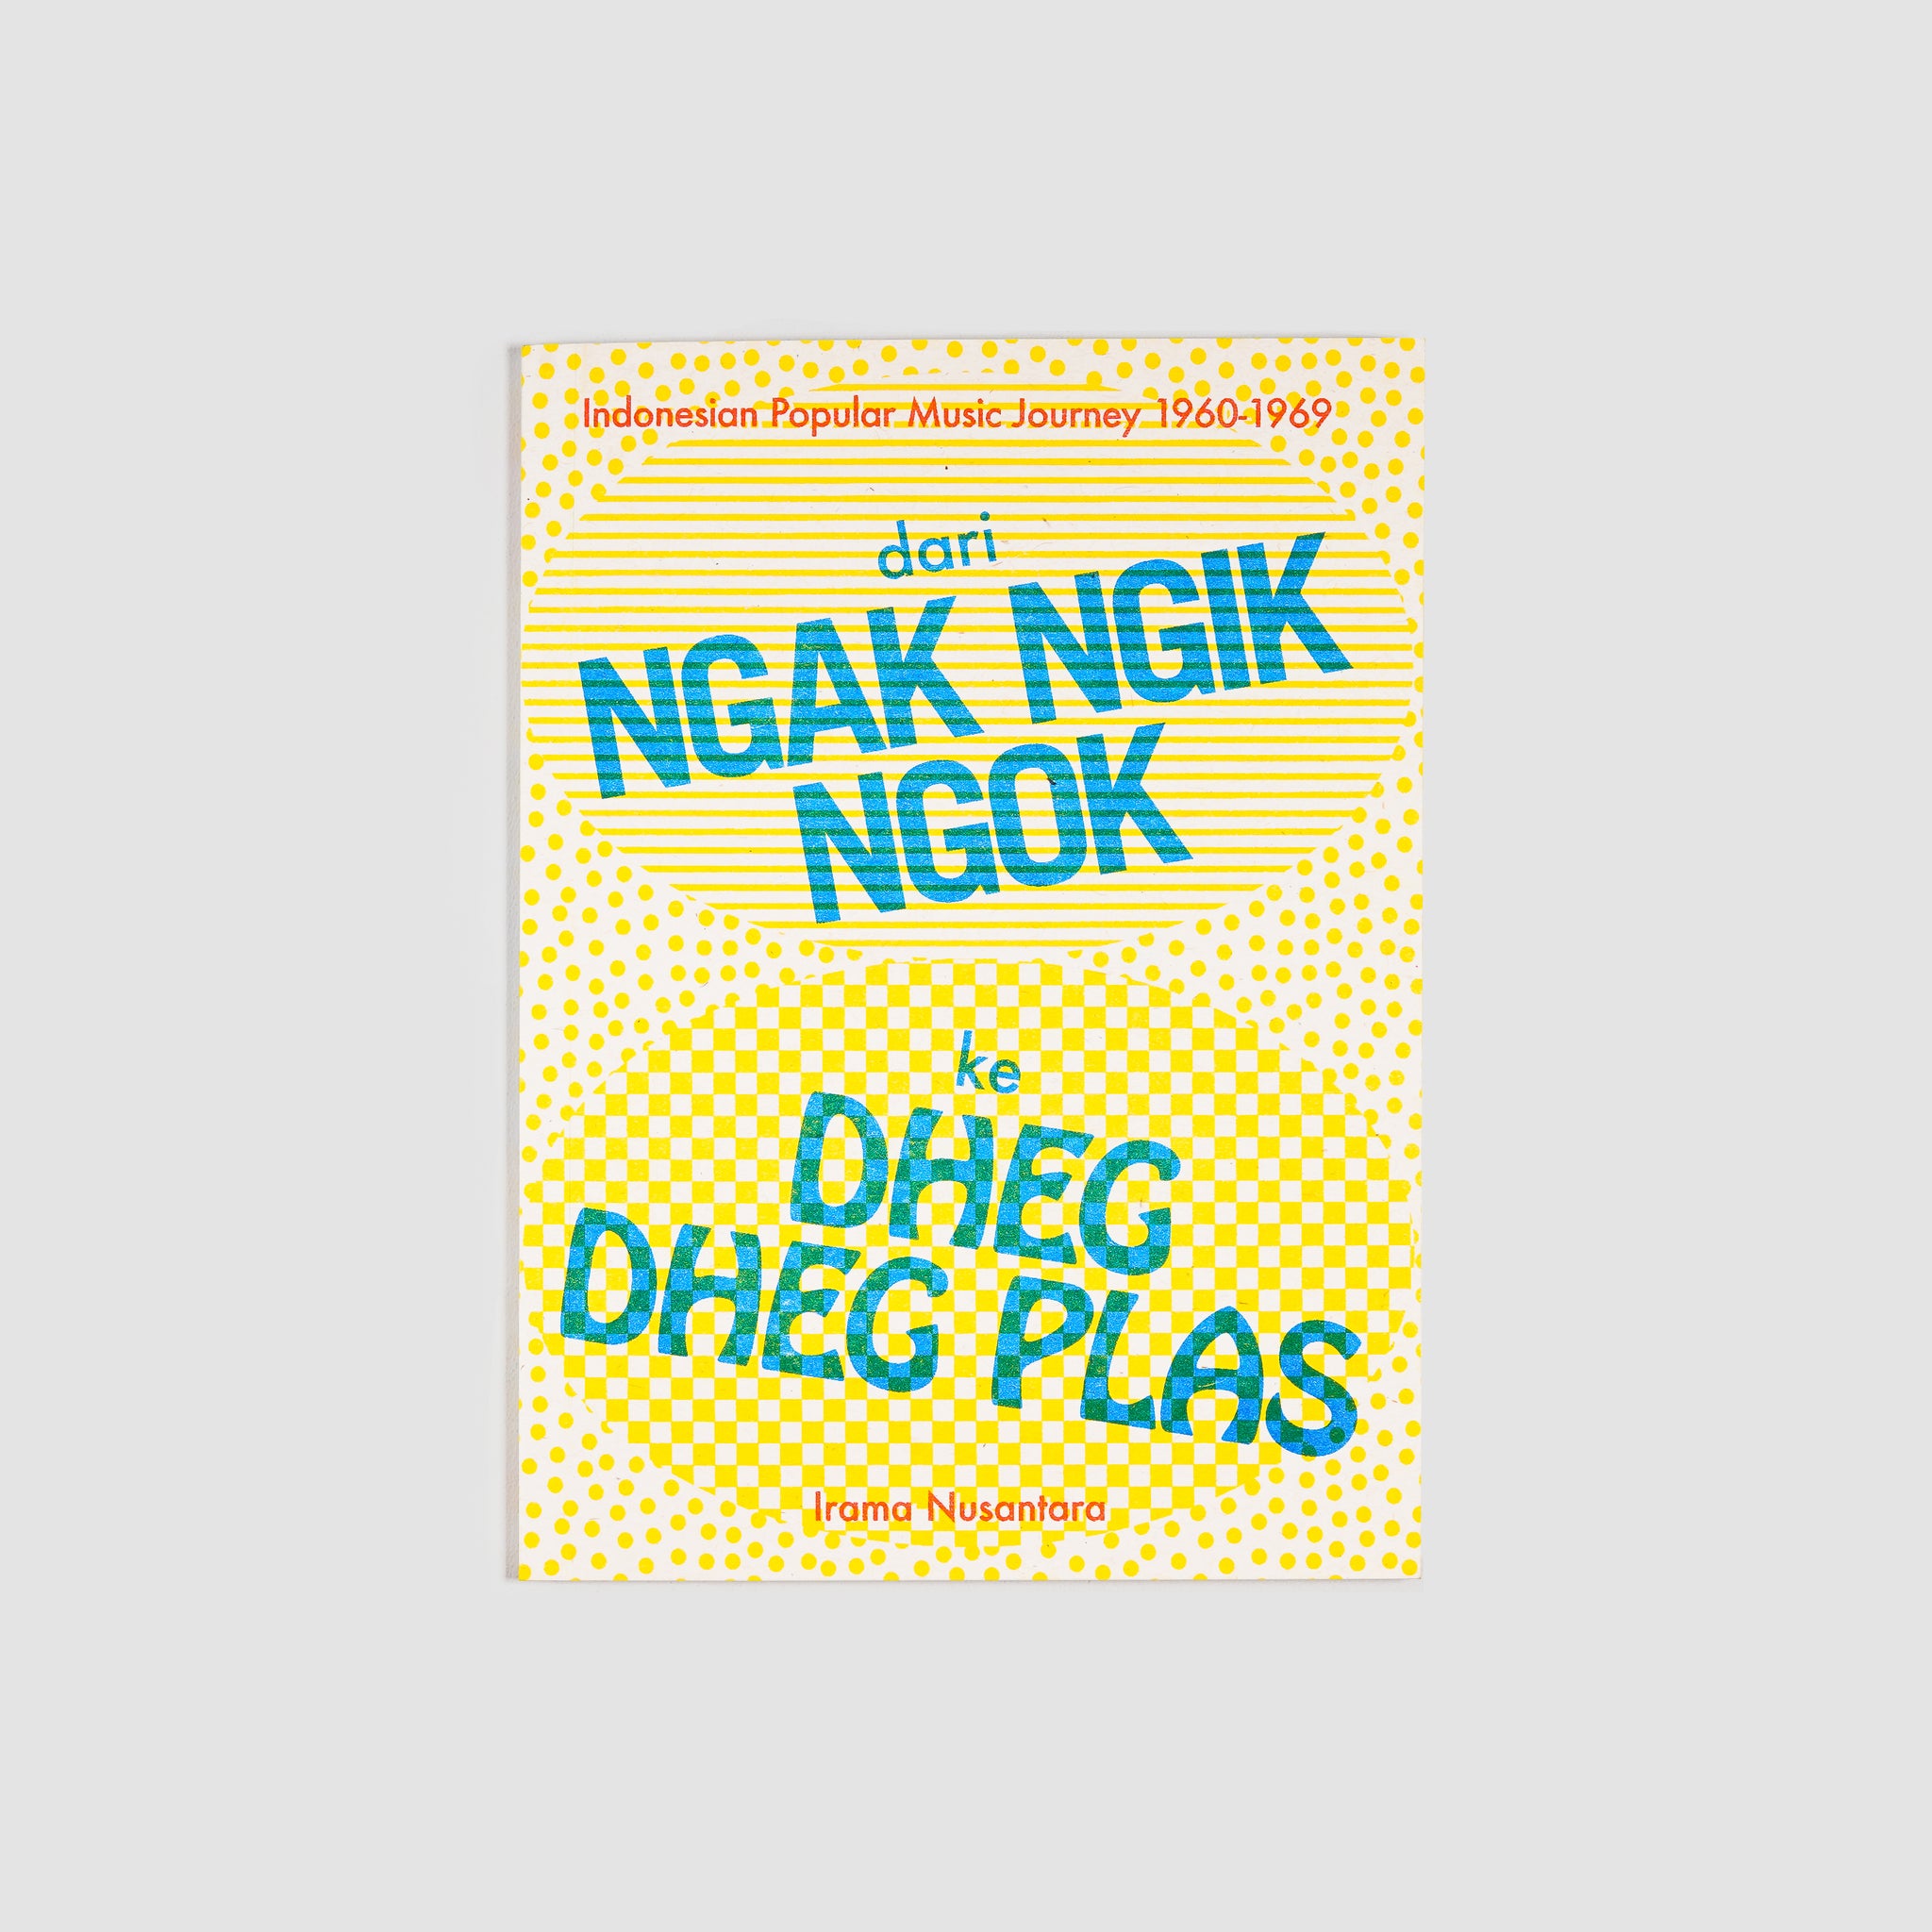 Dari Ngak Ngik Ngok ke Dheg Dheg Plas by Irama Nusantara (English)